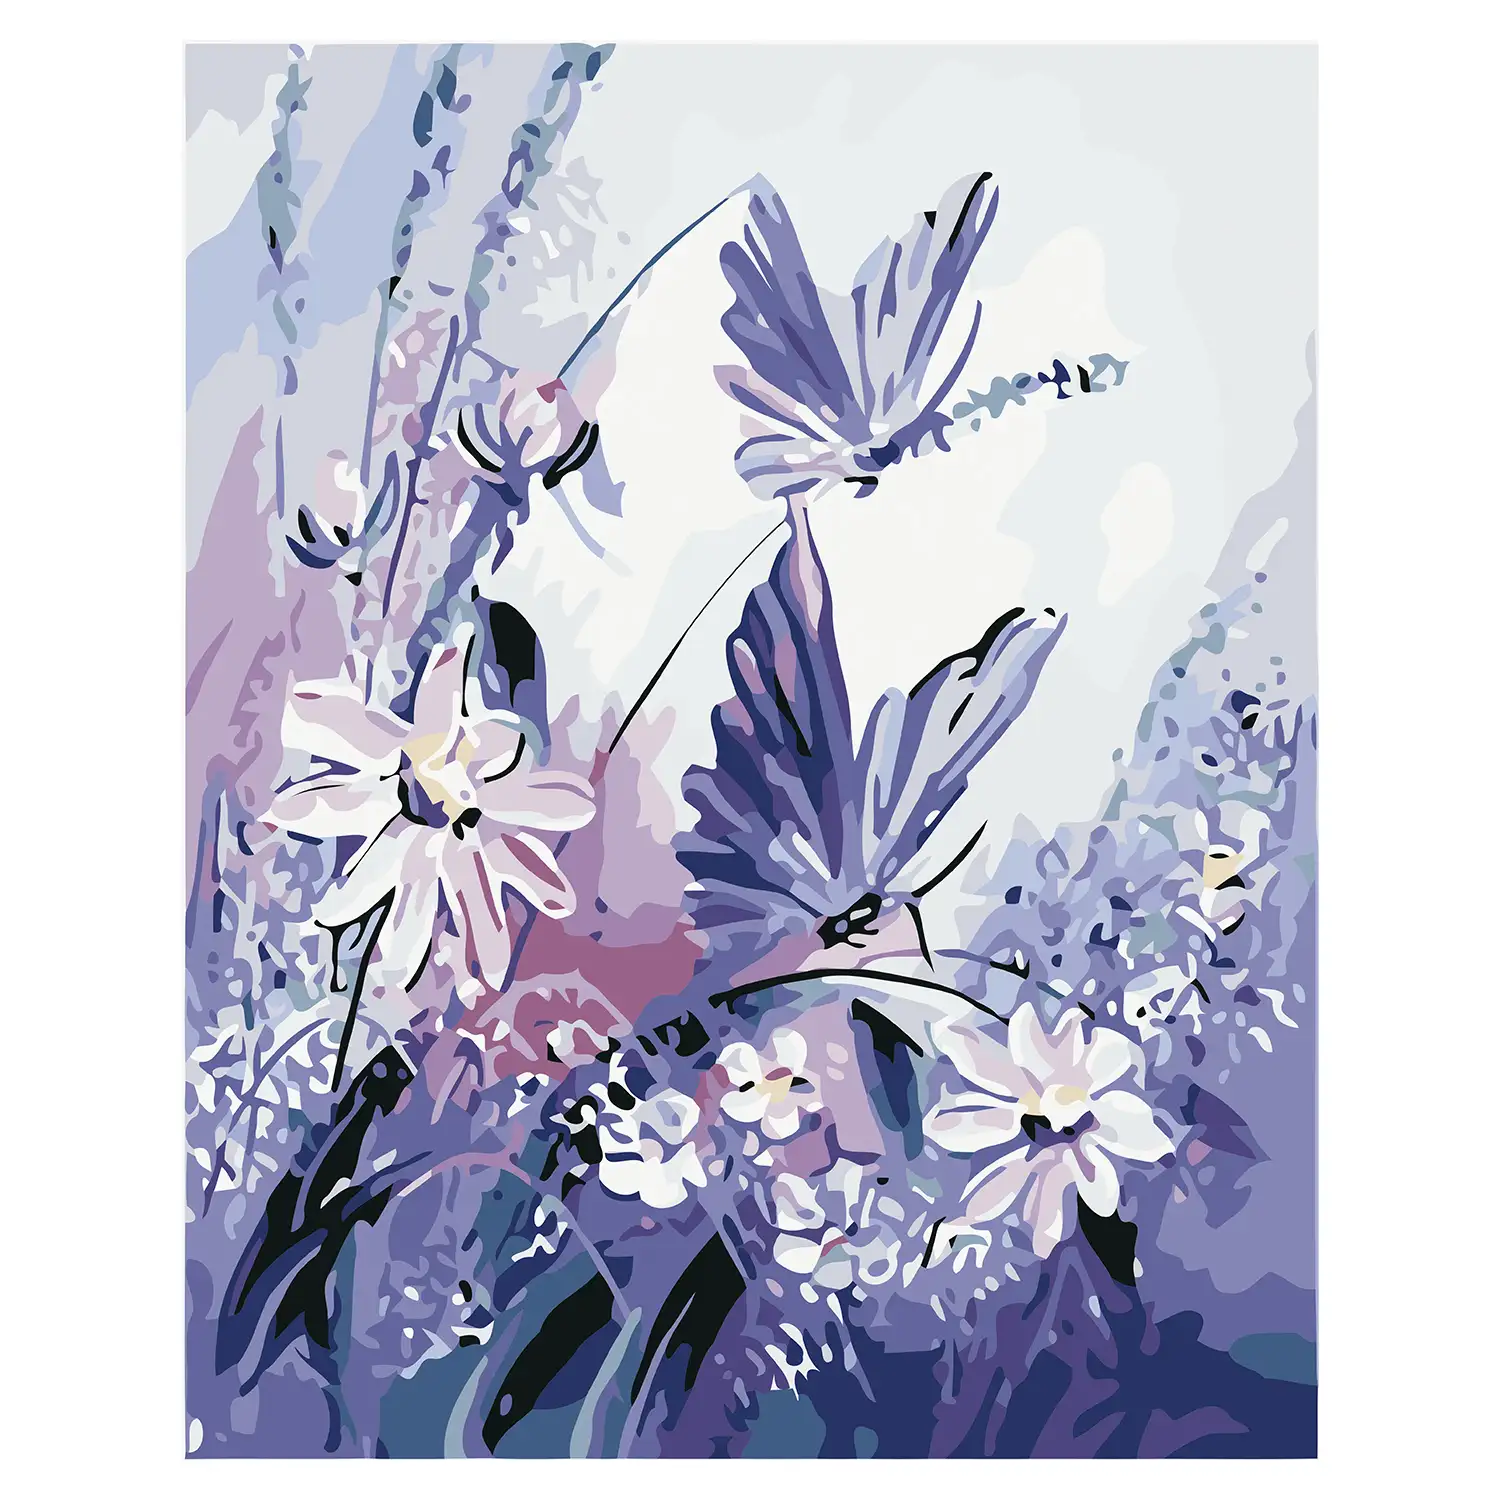 Lienzo con dibujo para pintar con números, de 40x50cm. Diseño flores y mariposas. Incluye pinceles y pinturas necesarias.